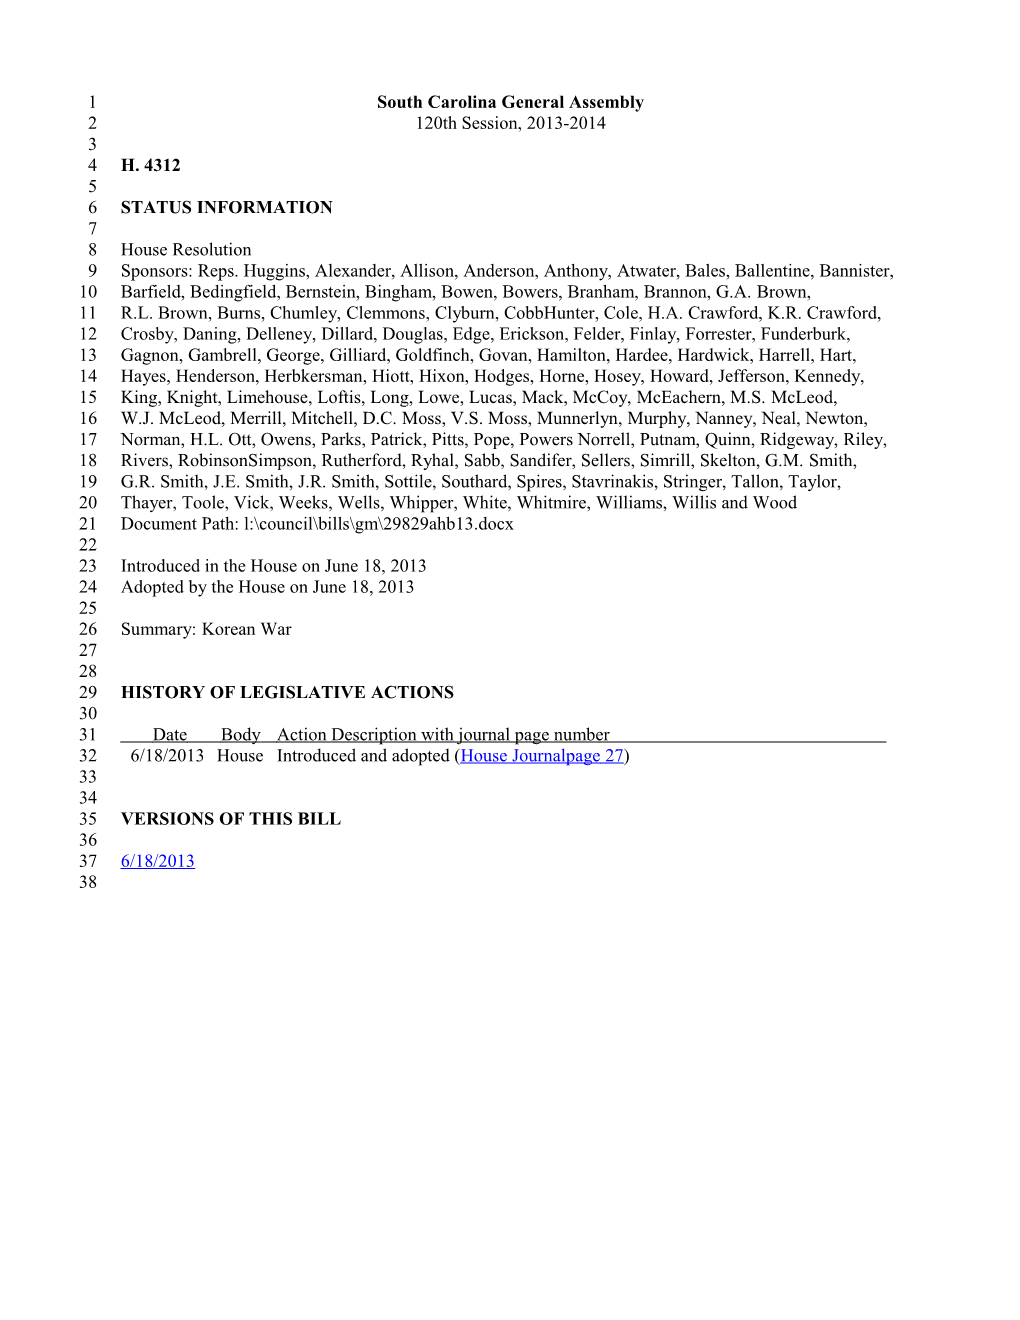 2013-2014 Bill 4312: Korean War - South Carolina Legislature Online